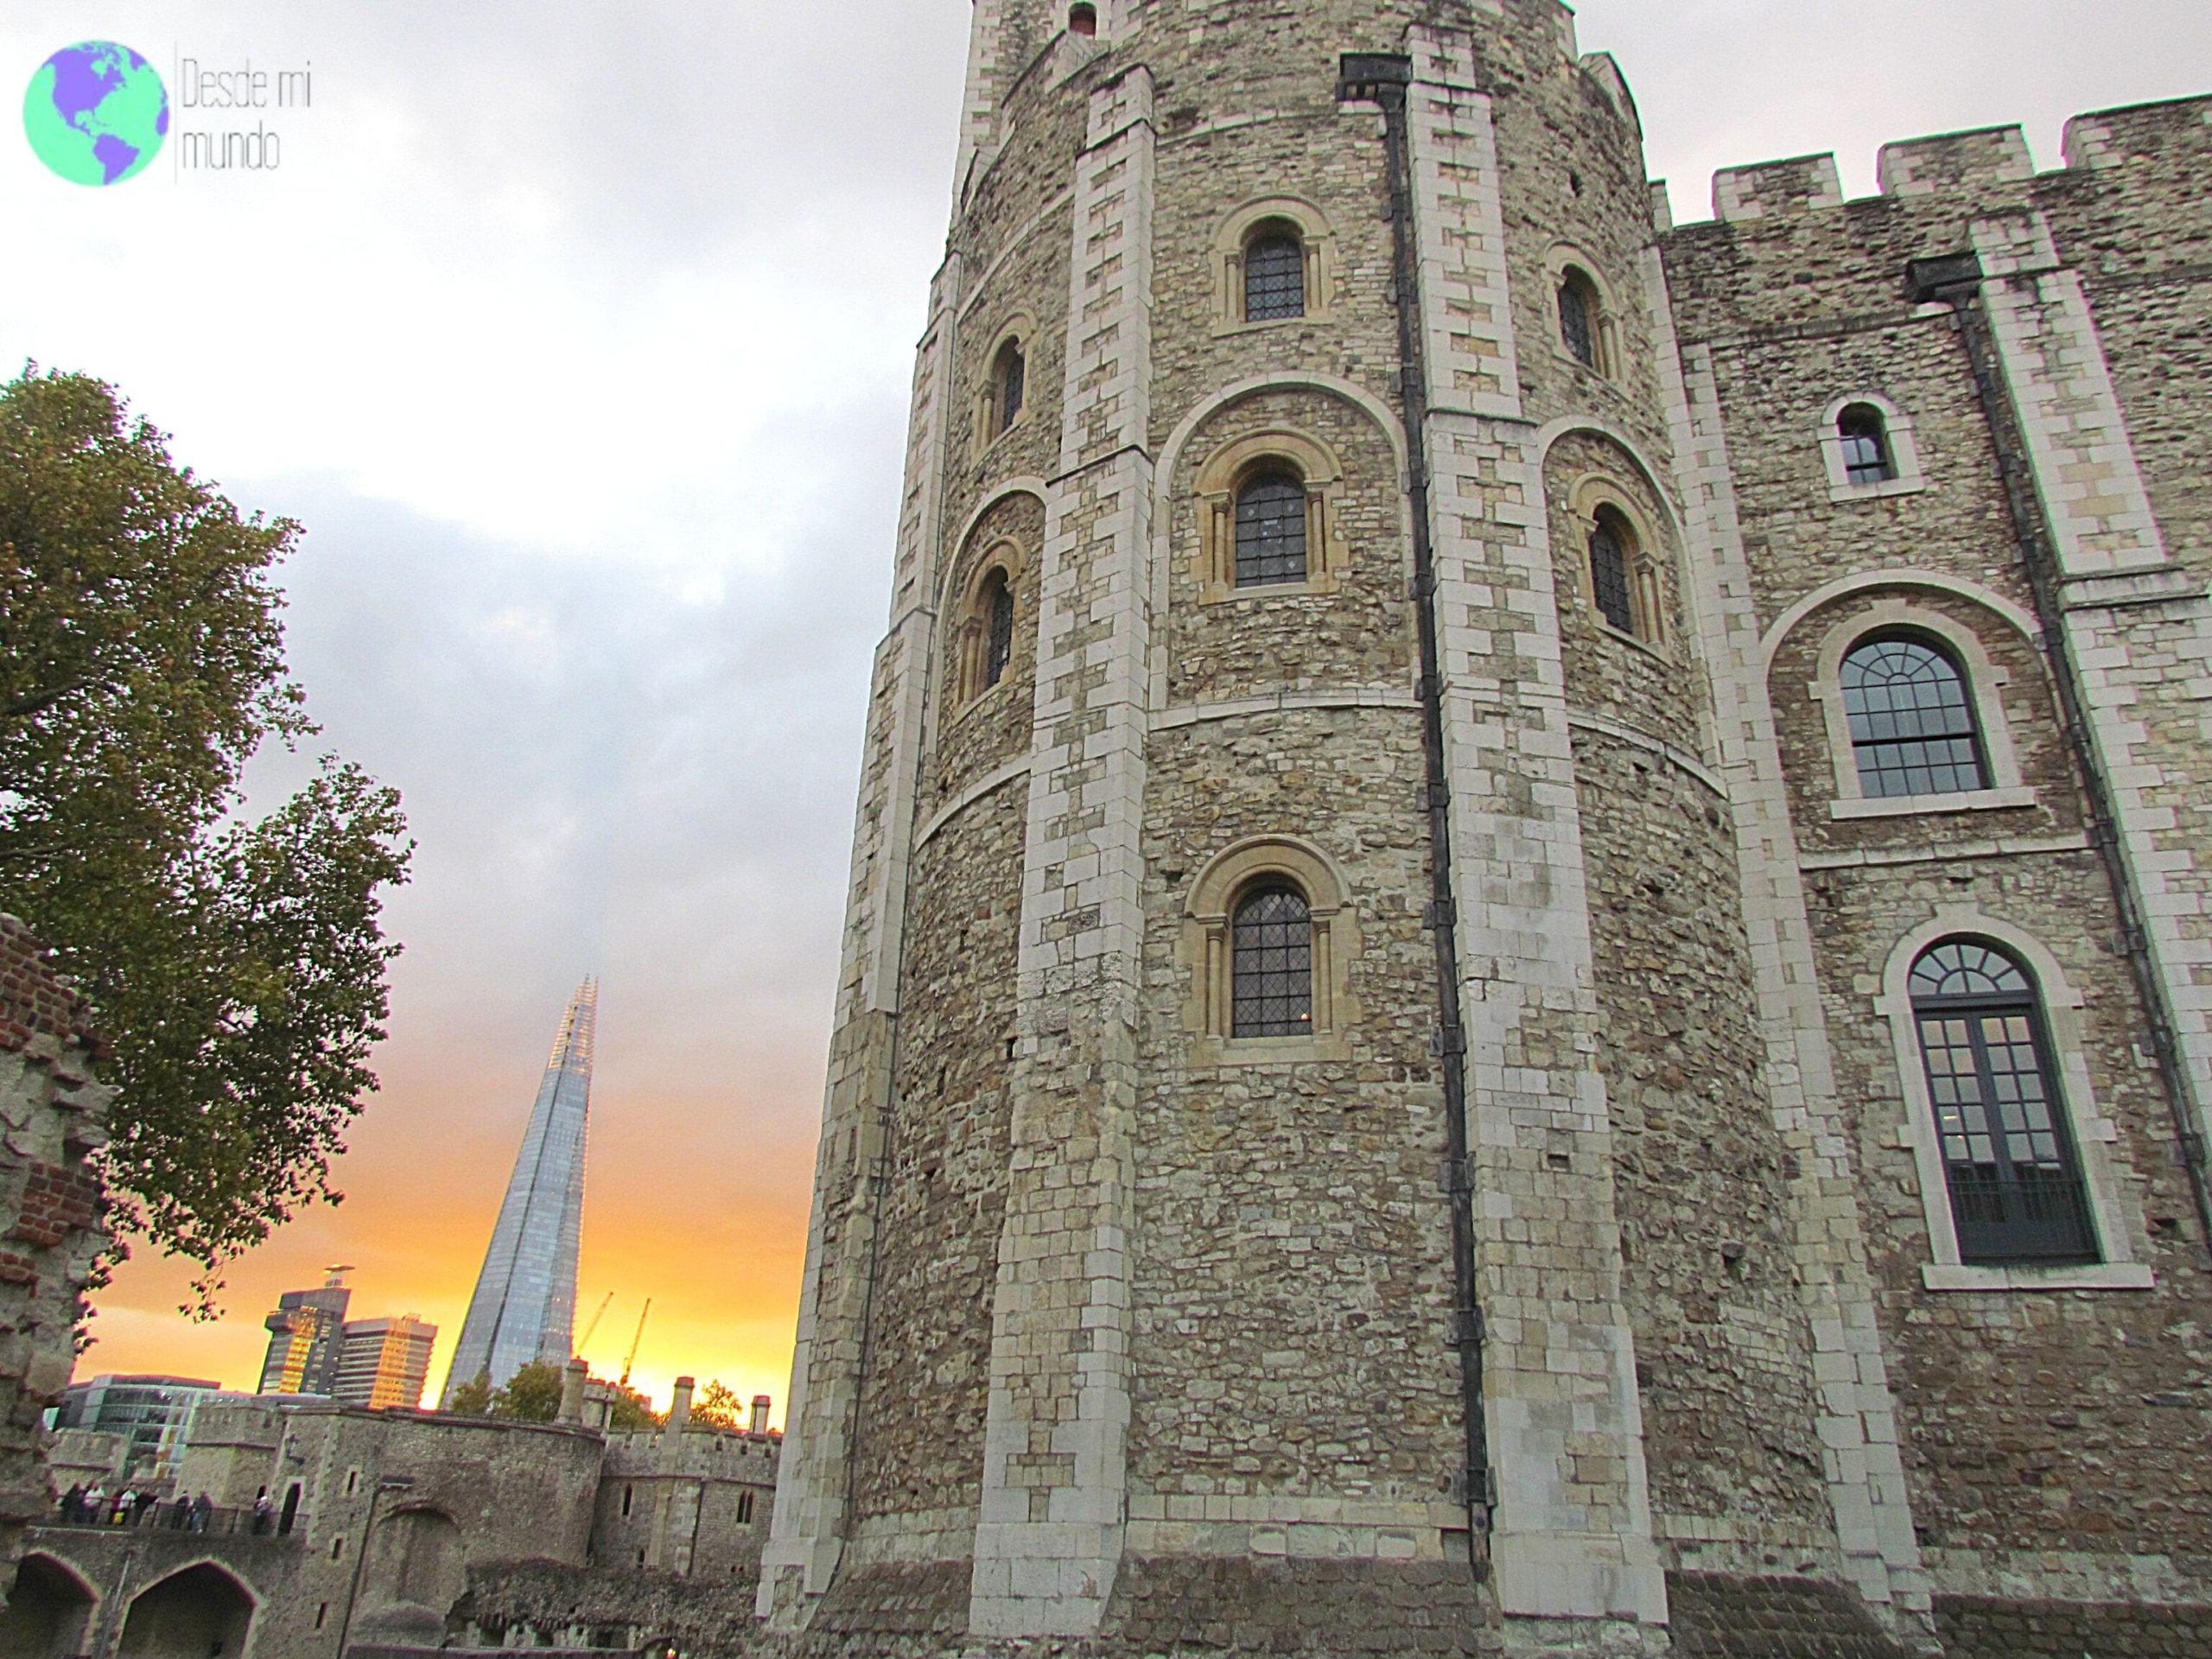 London Tower - Escala en Londres - Desde mi mundo Blog de viajes